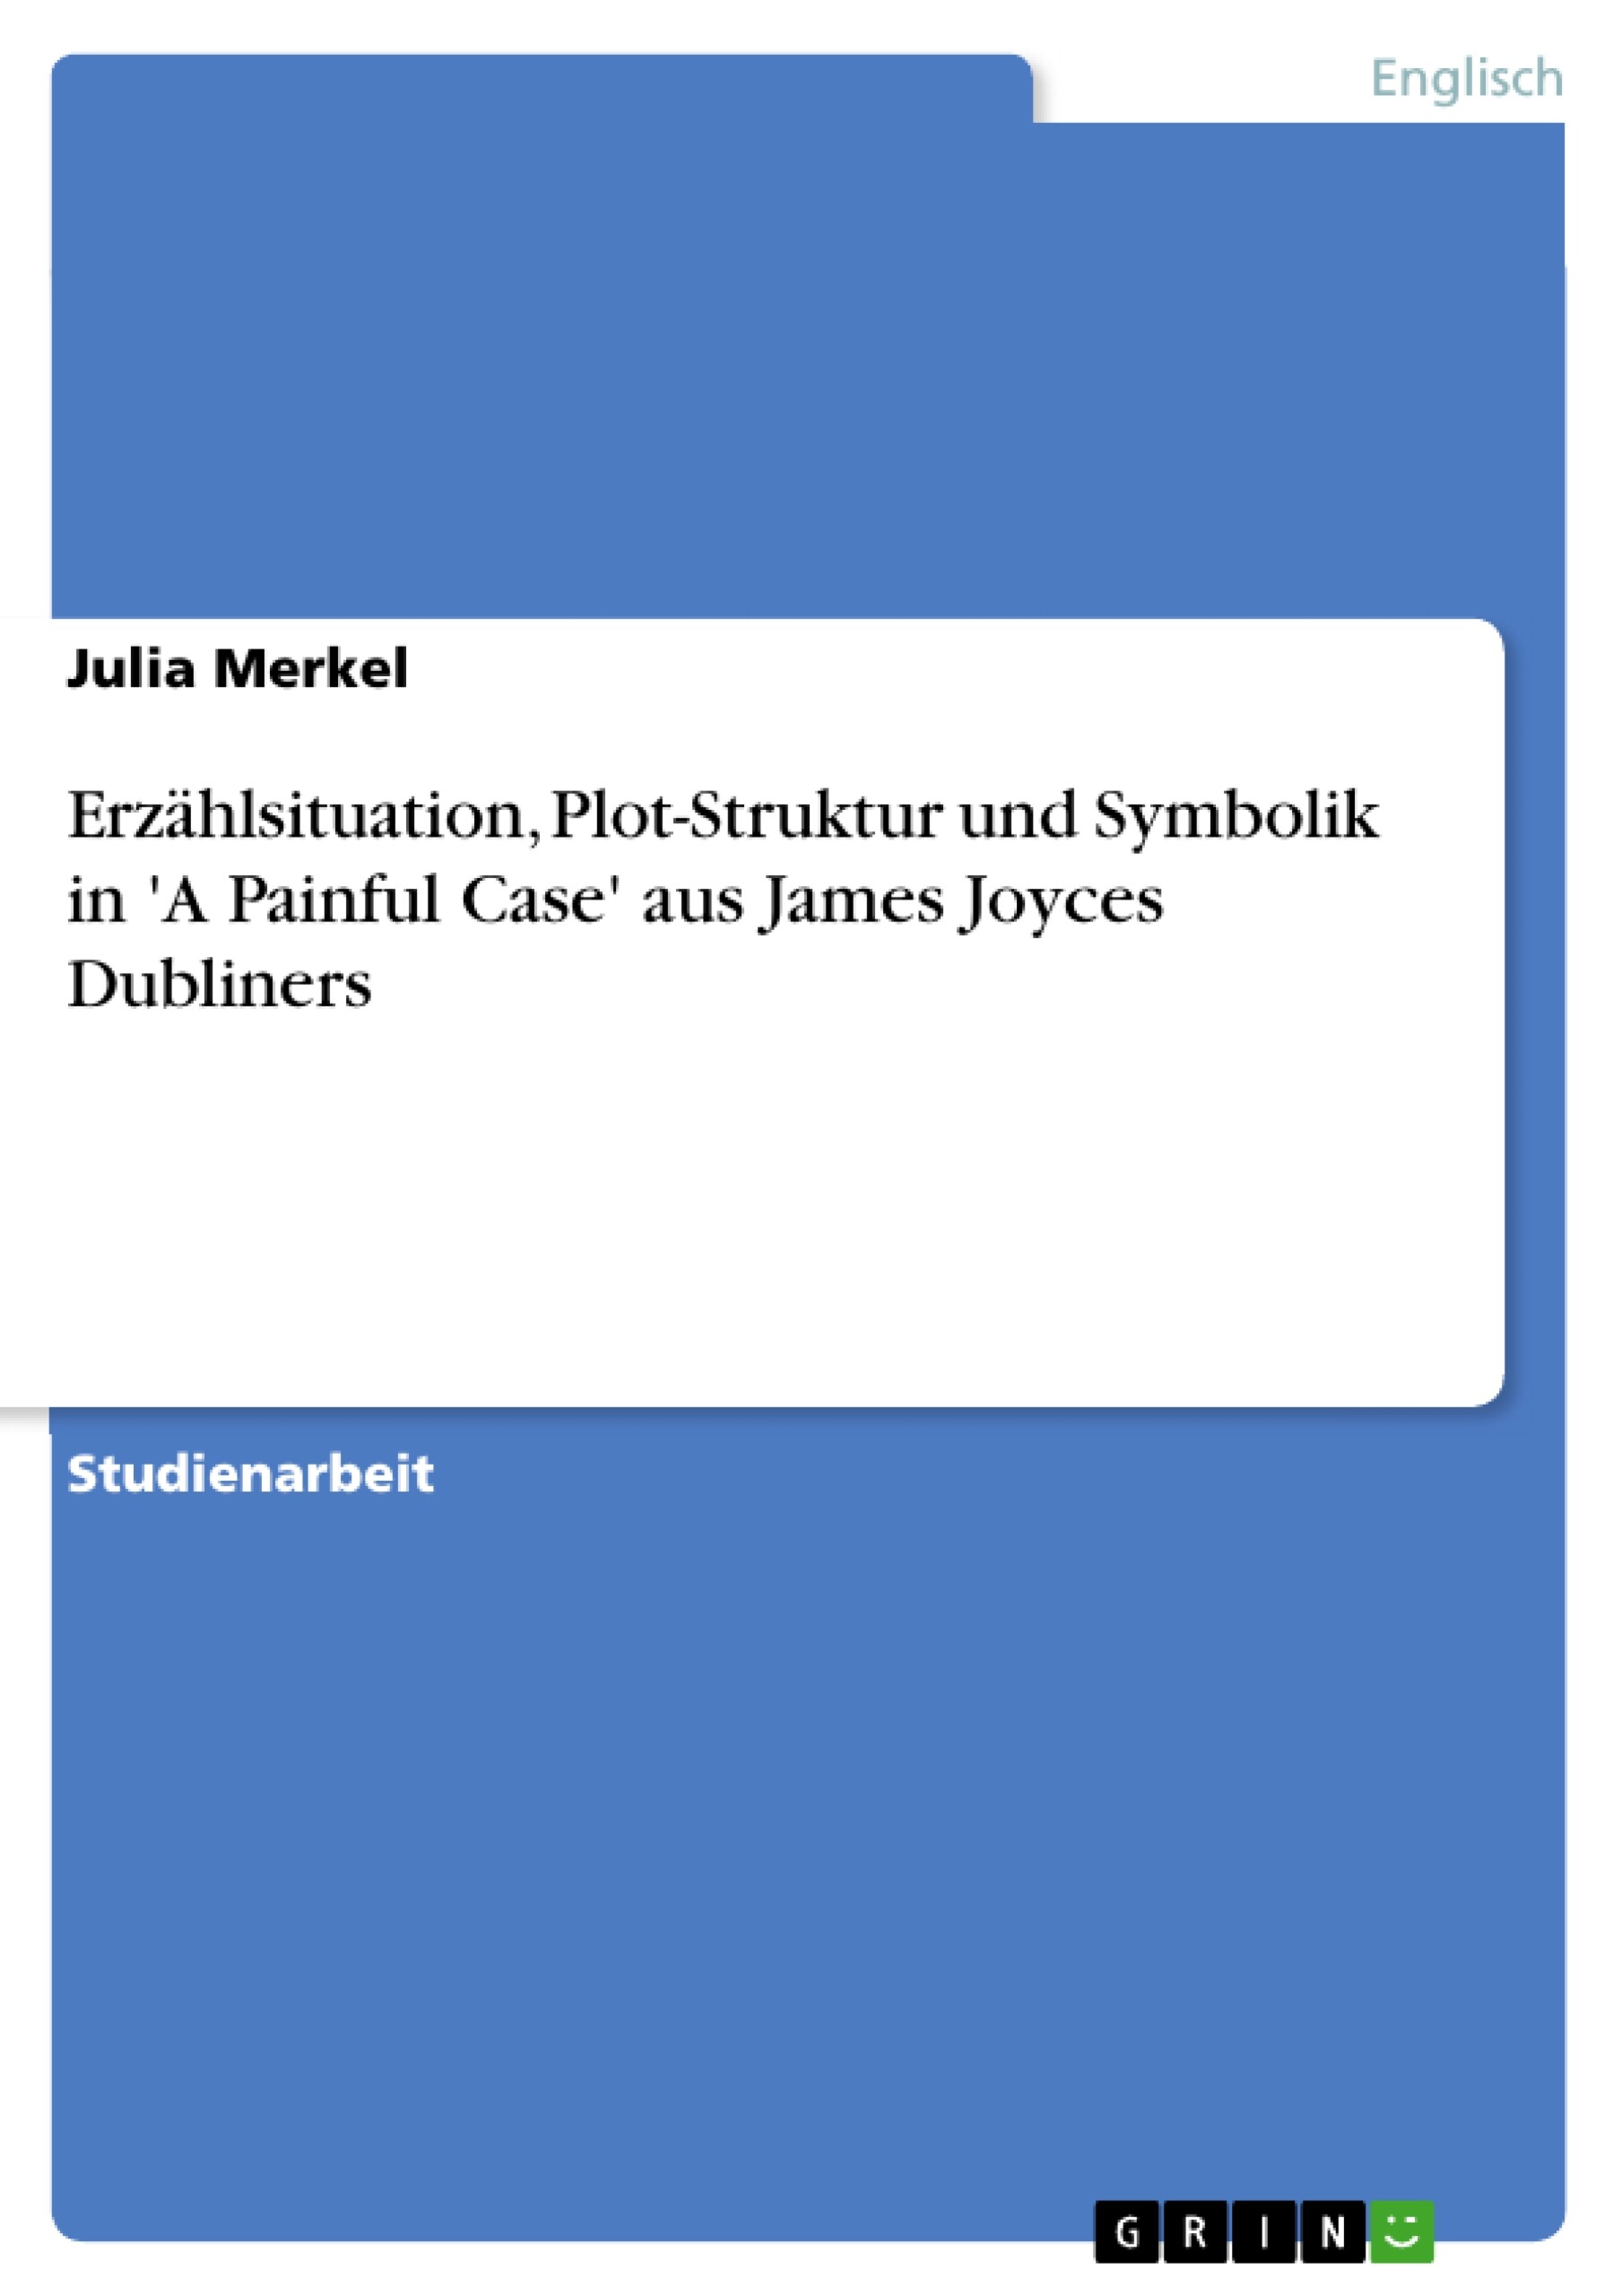 Erzählsituation, Plot-Struktur und Symbolik in 'A Painful Case' aus James Joyces Dubliners